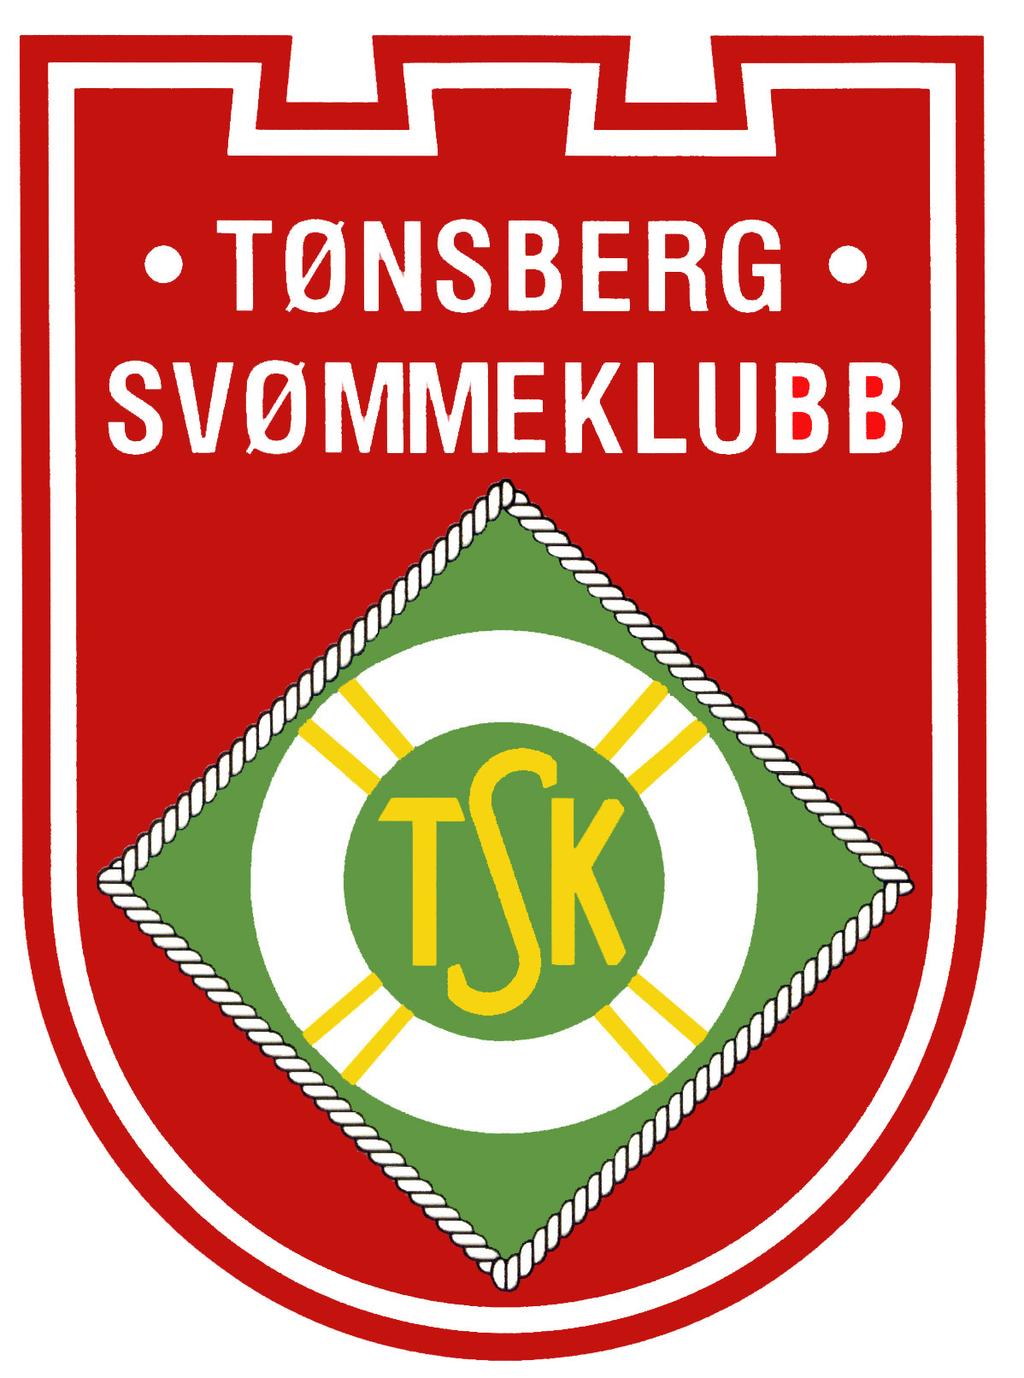 ÅPENT STEVNE Tønsberg Svømmeklubb Åpent Stevne 19 27 15.